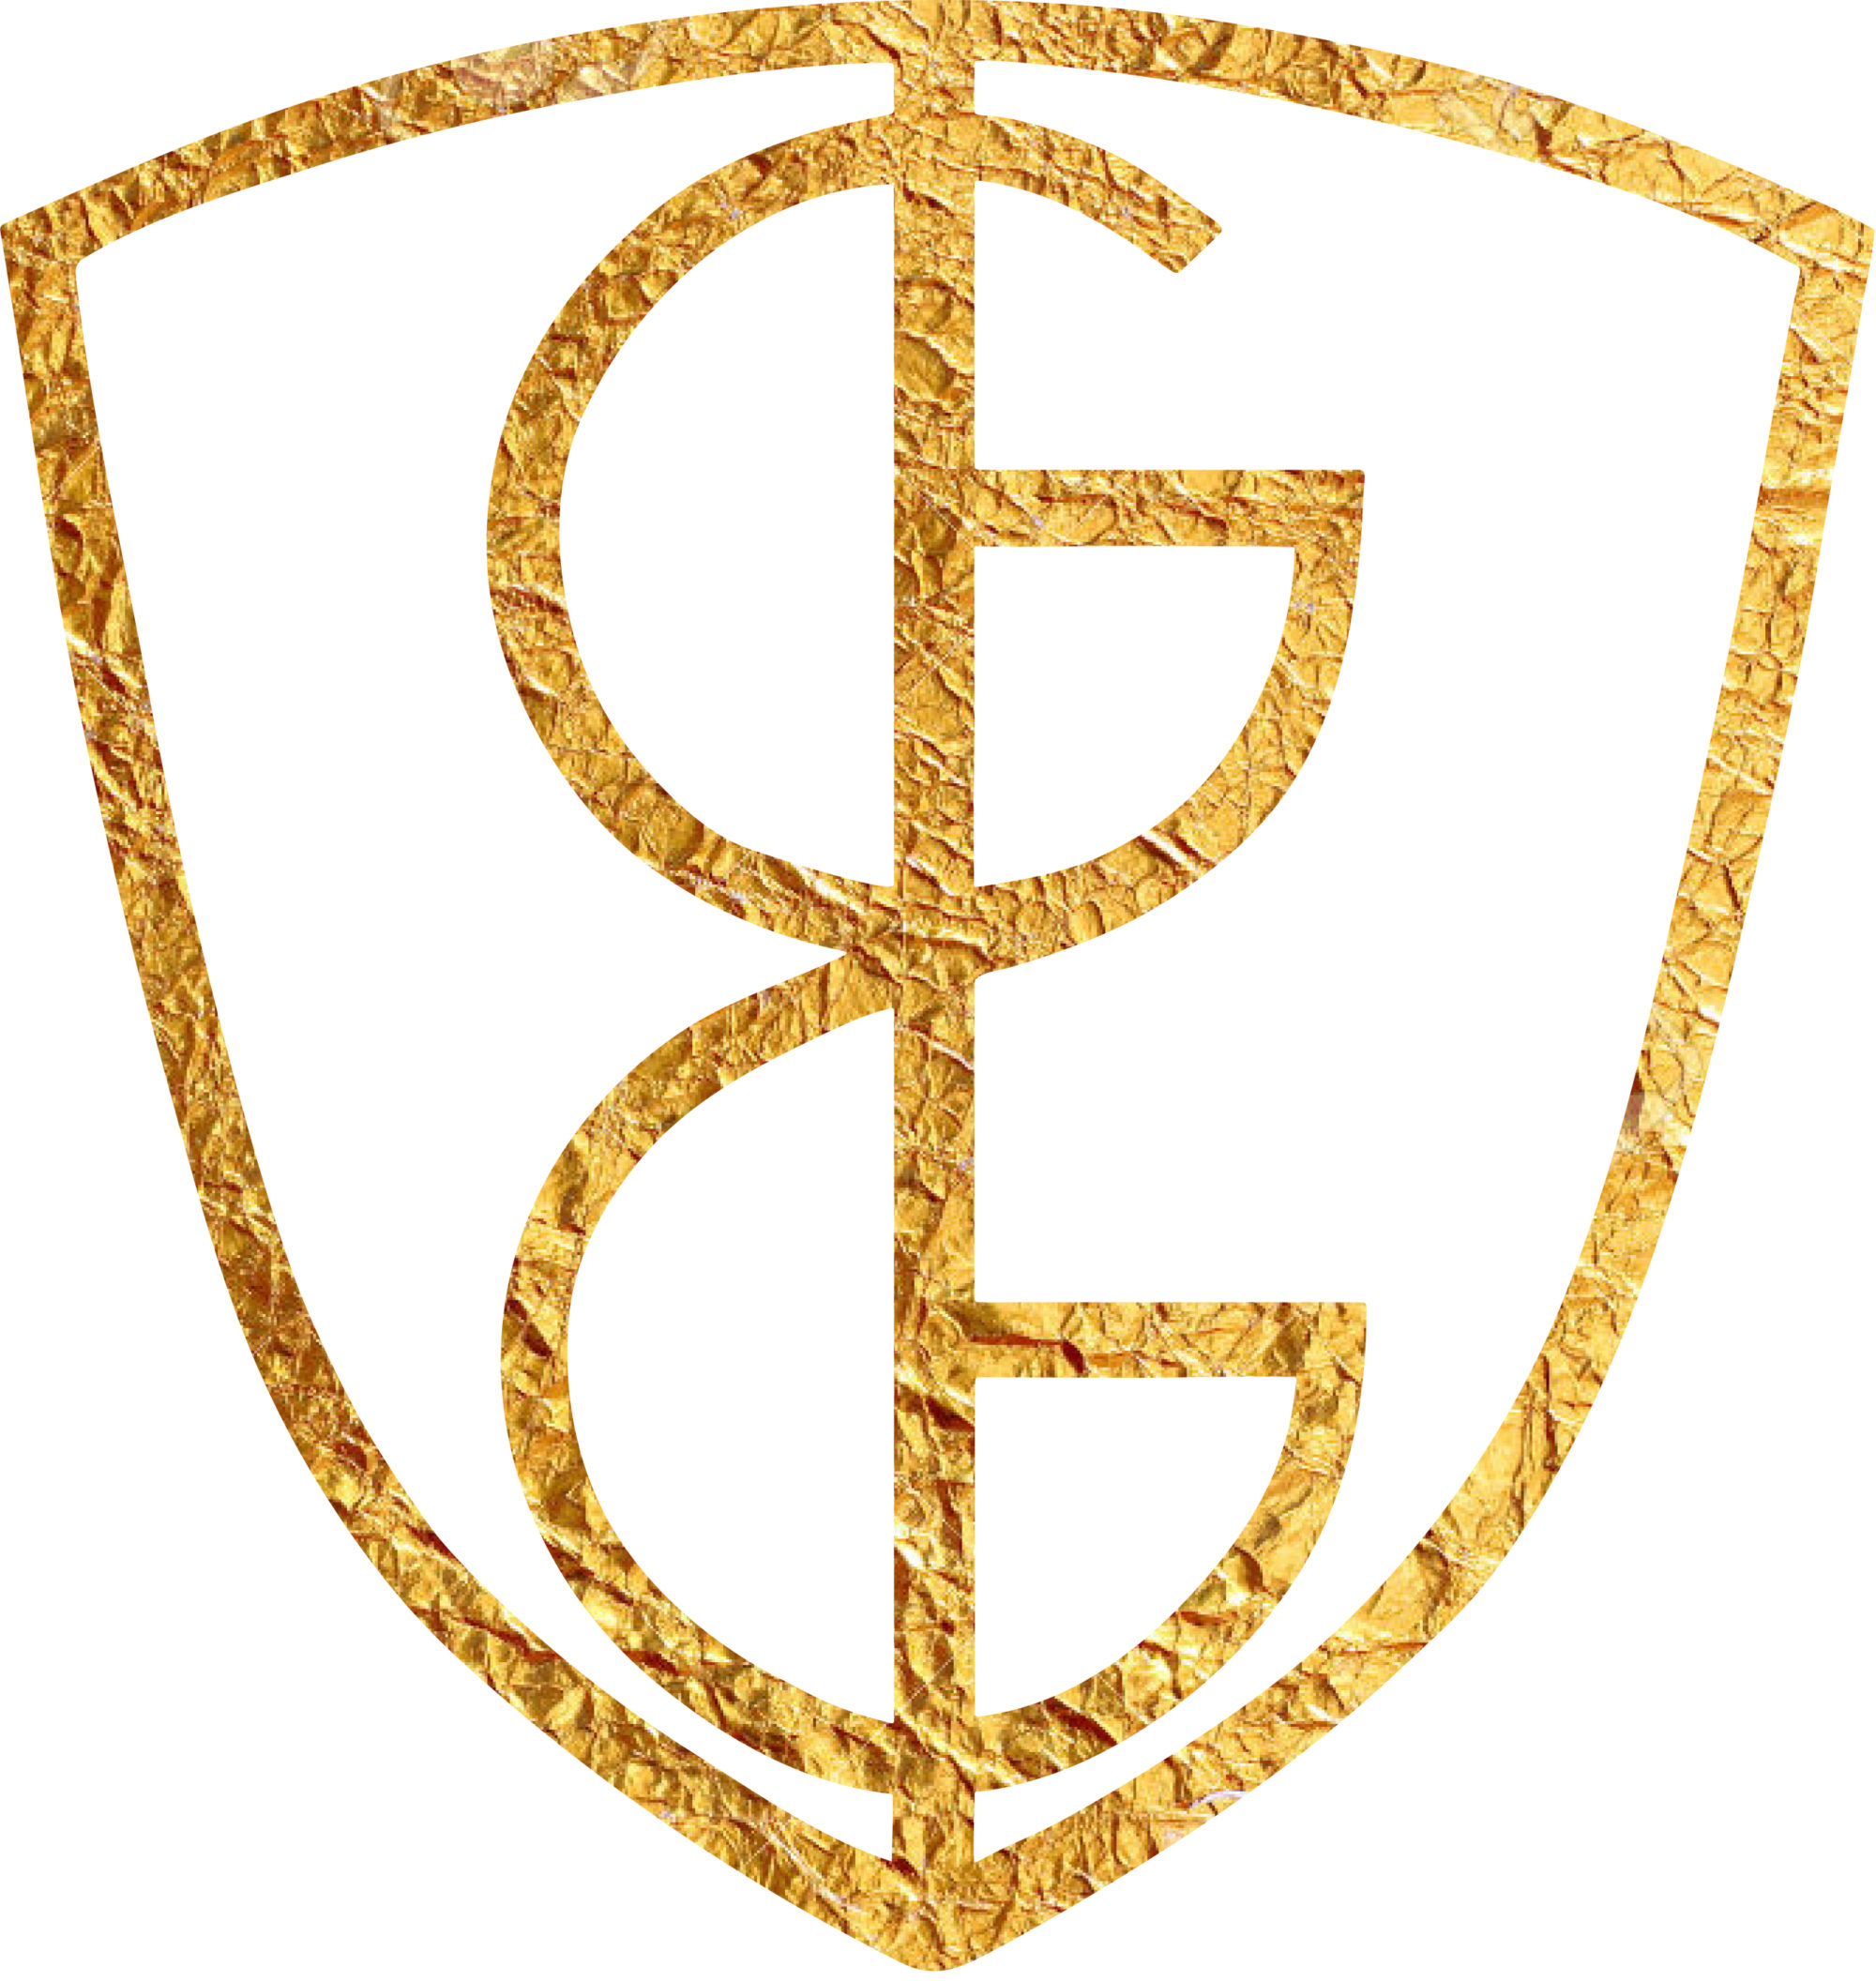 Golden General